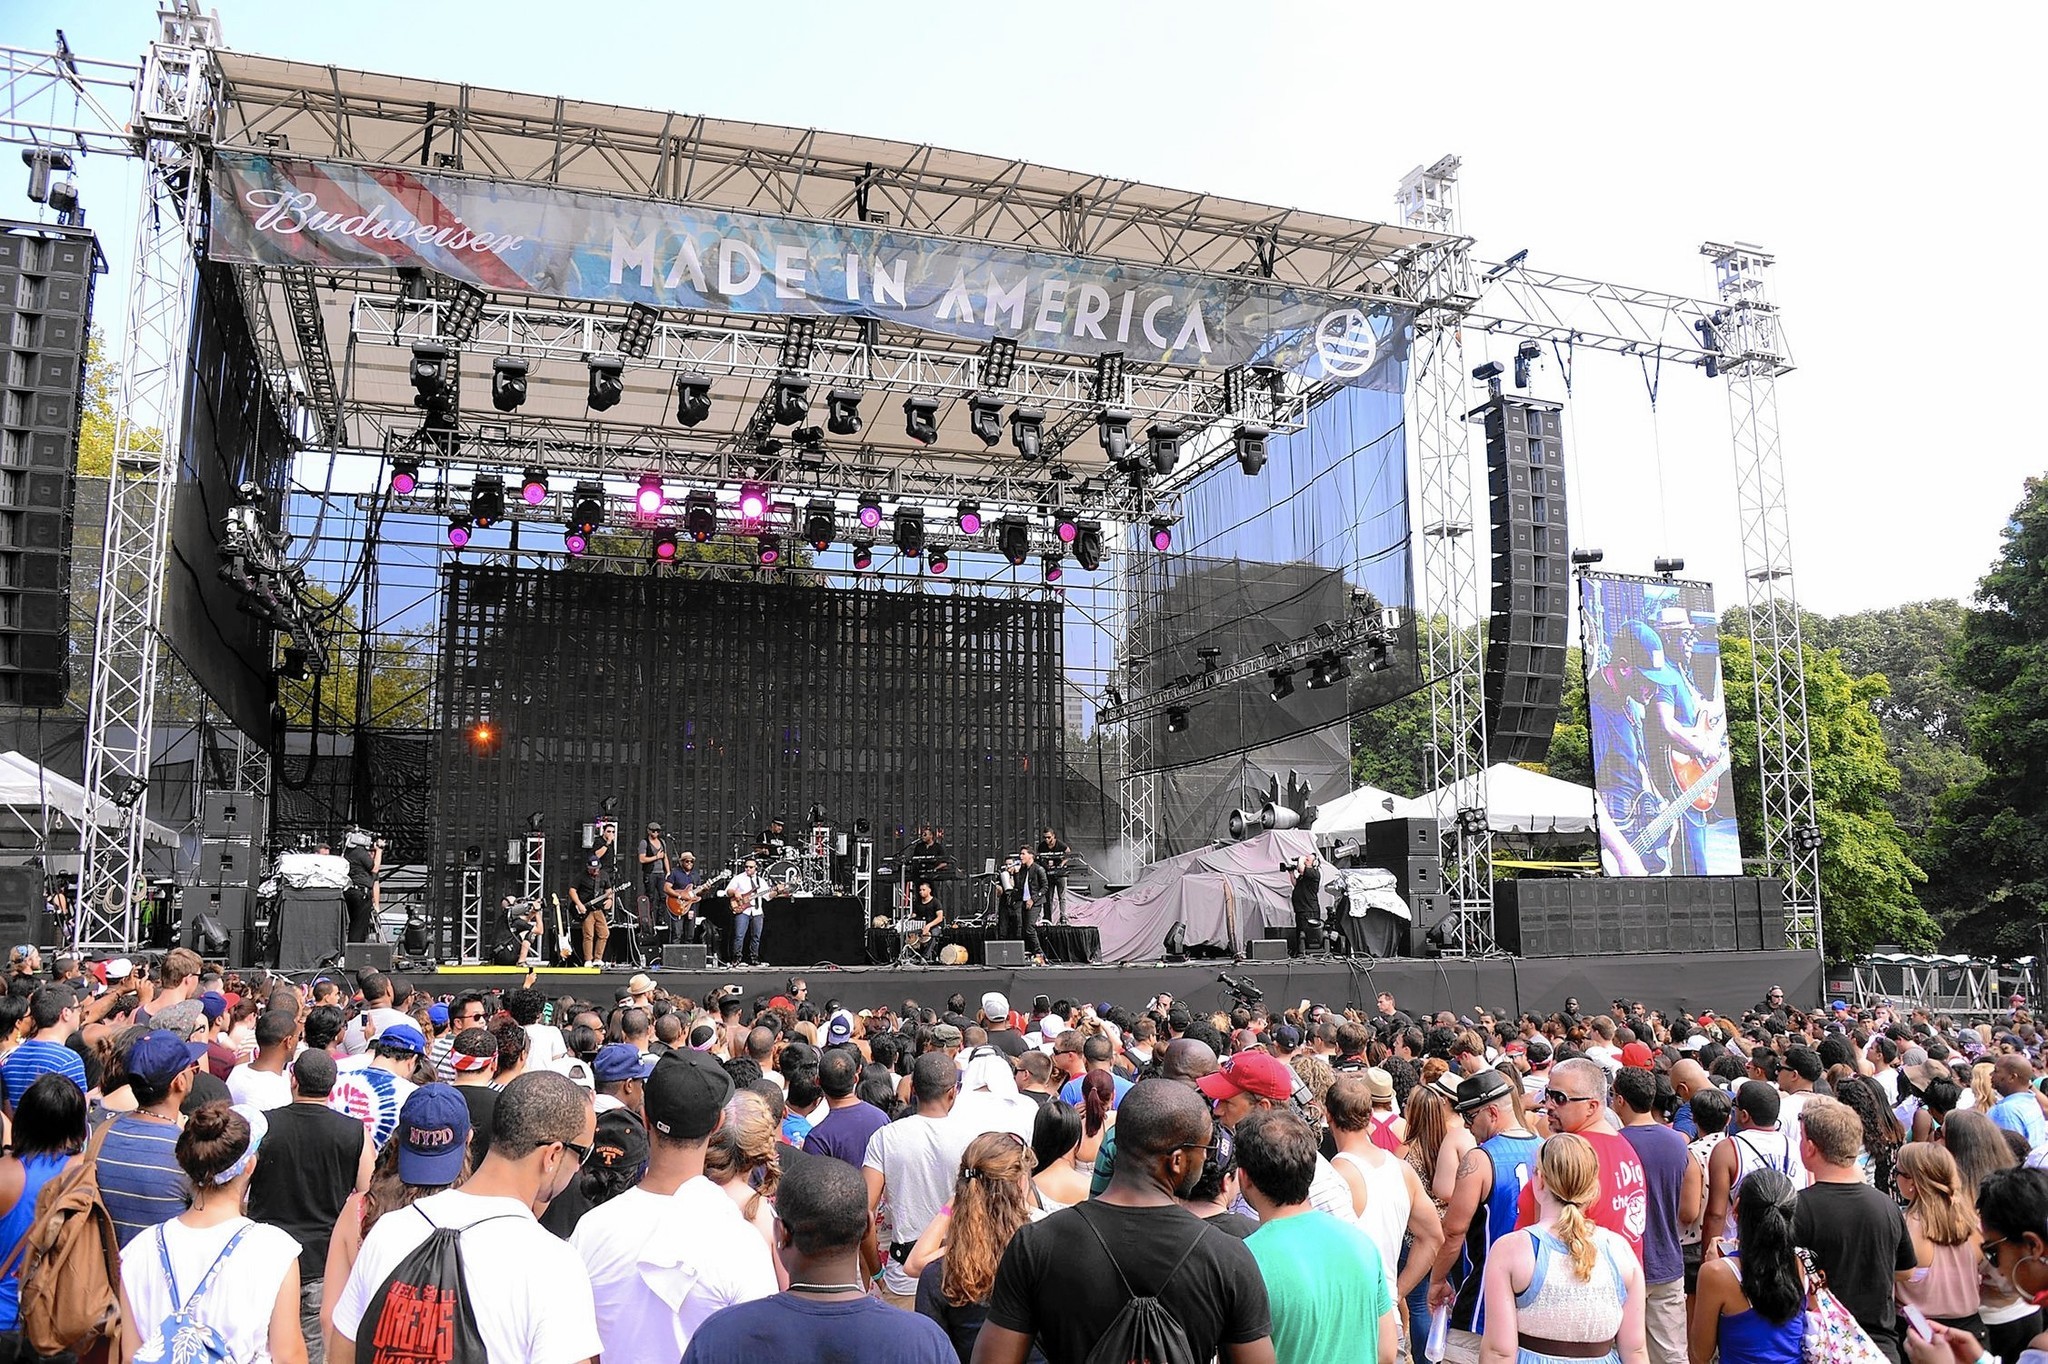 Made in America Jay Z's Labor Day festival returns to Philadelphia